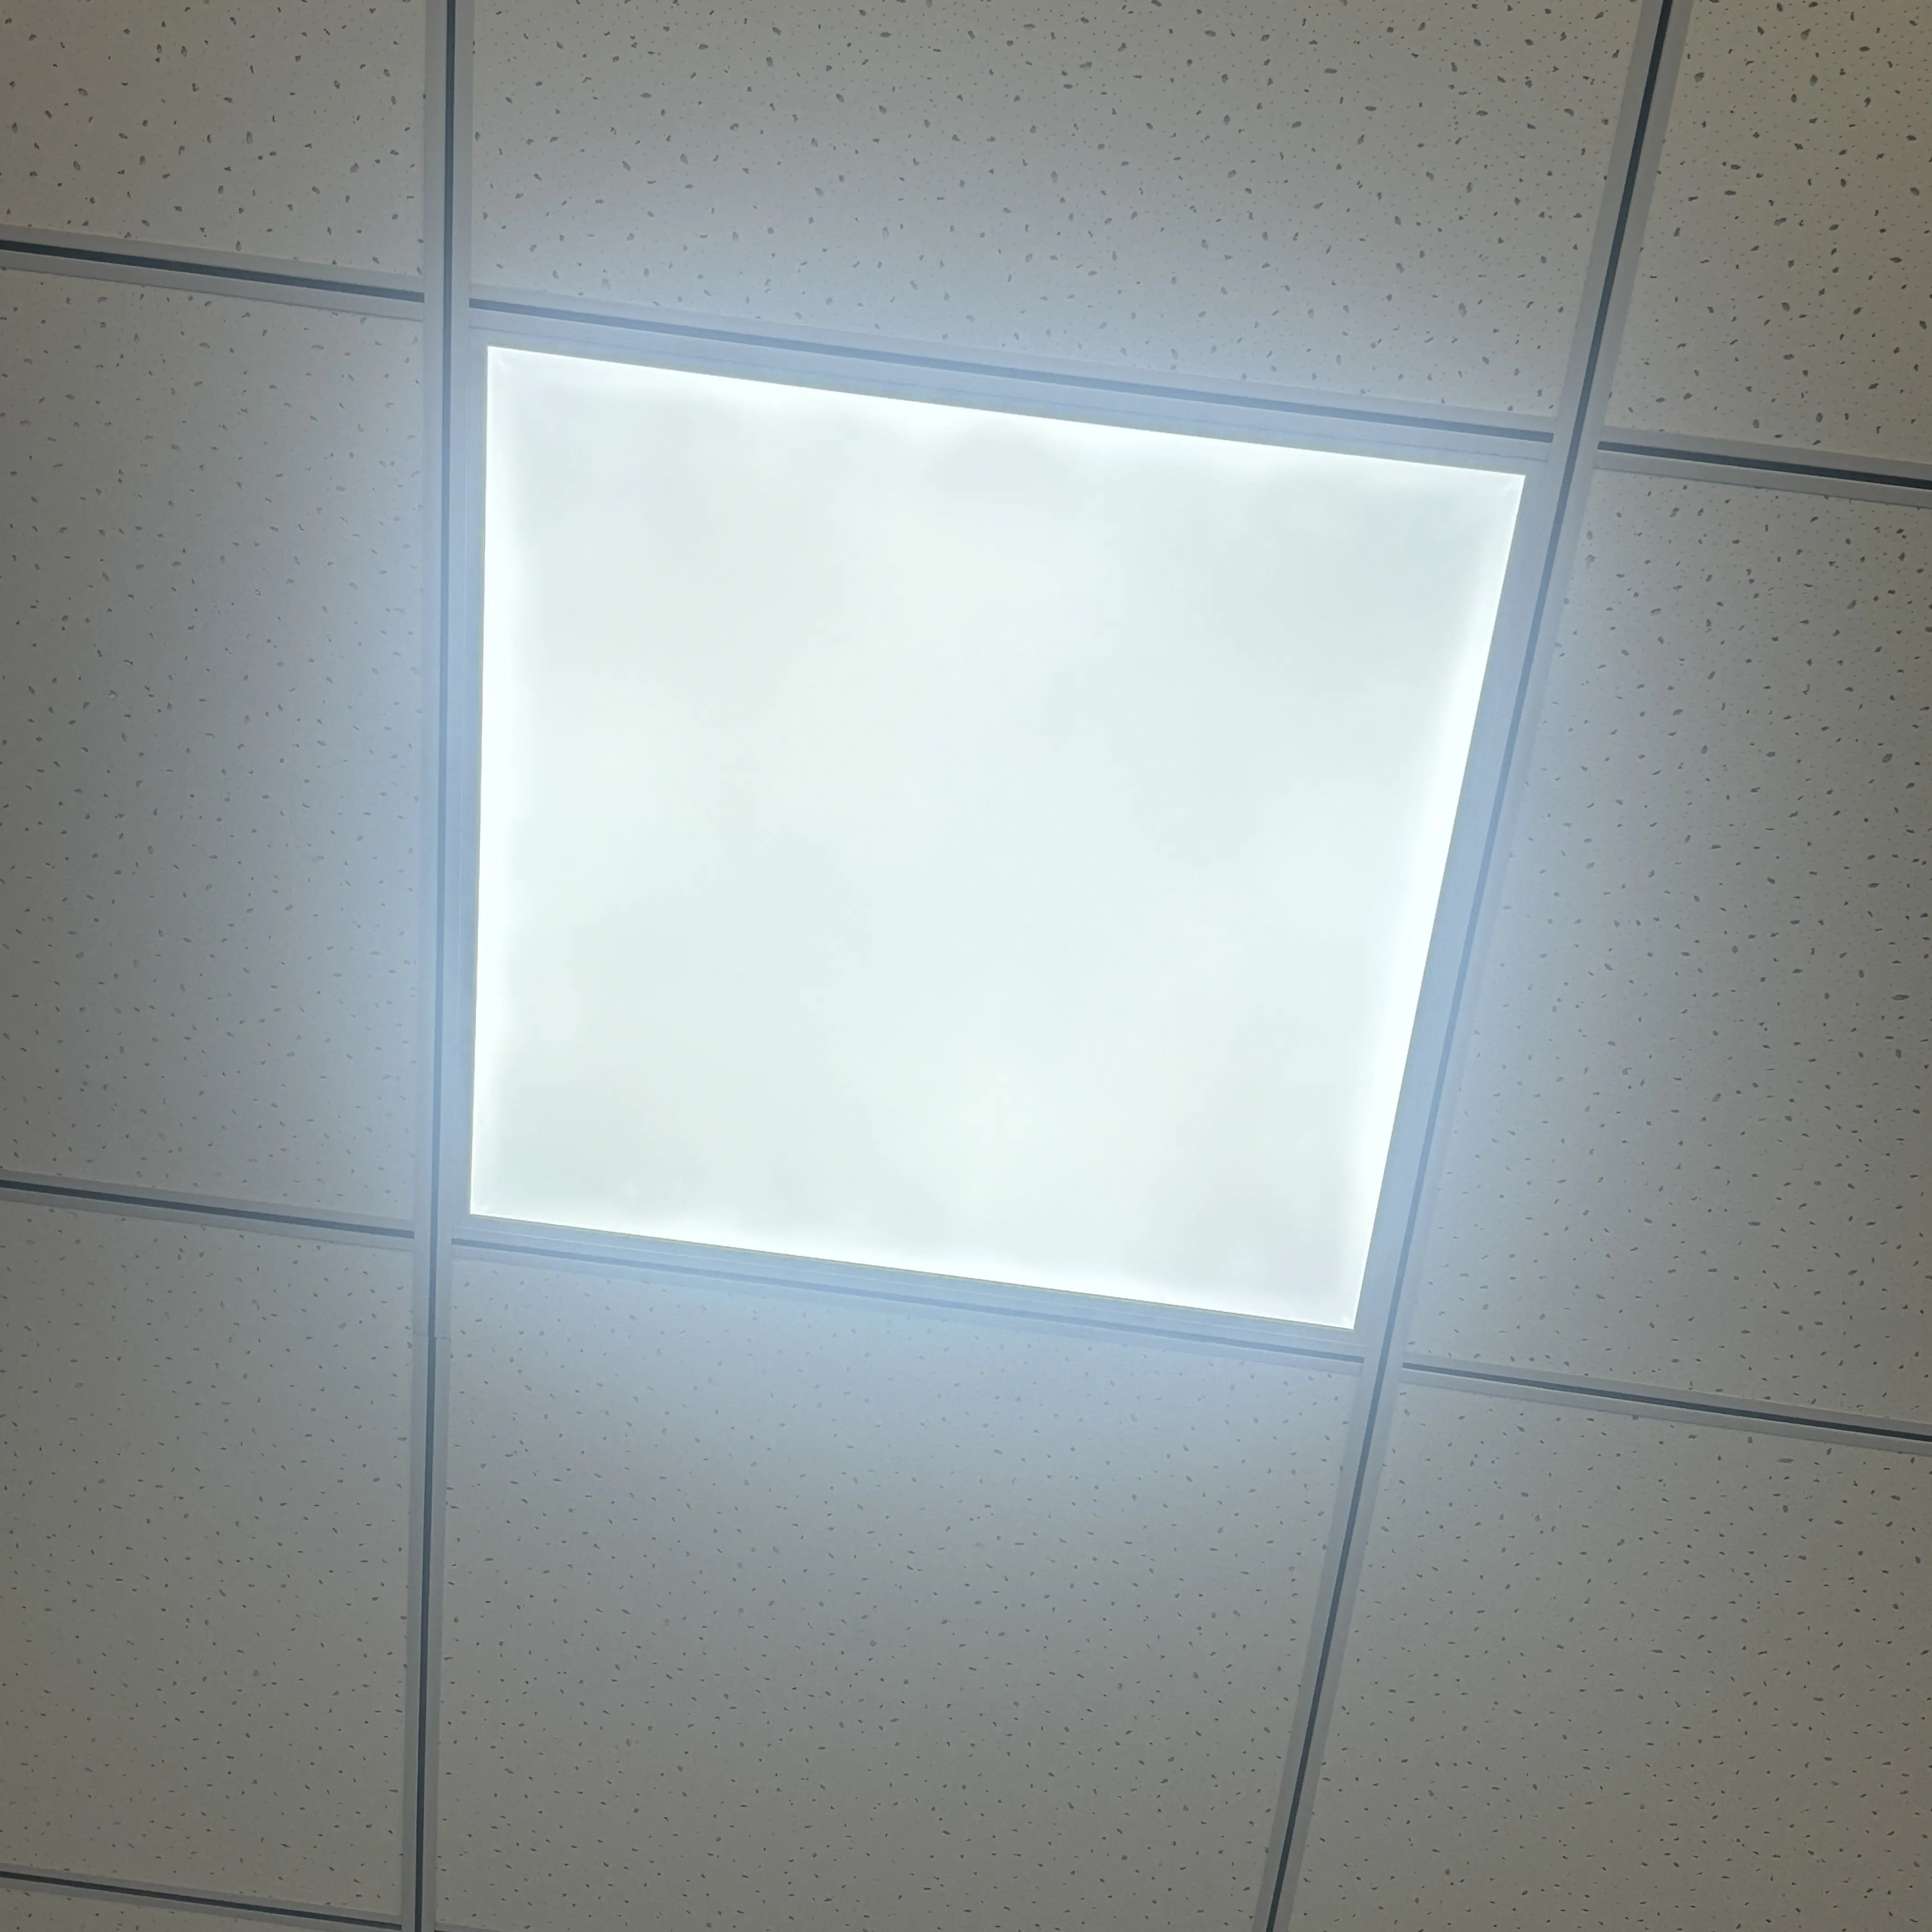 Светильник светодиодный интегрированный потолок 60X60 см алюминиевый 40 Вт встраиваемый алюминиевый светильник 2x2 светильника с высотой 20 мм